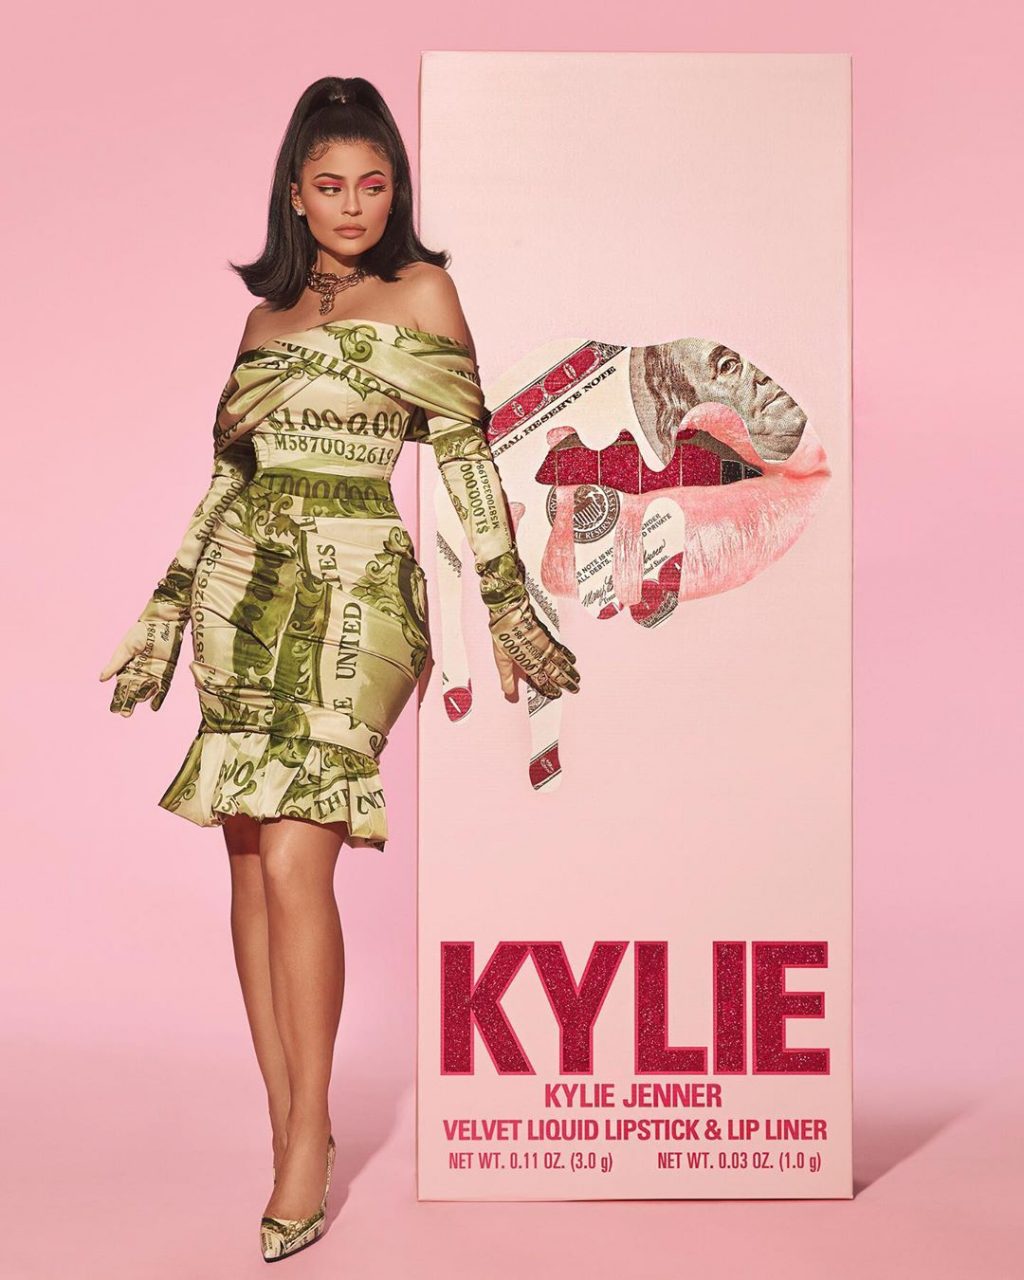 Kylie Jenner diện thời trang vintage - đầm Moschino